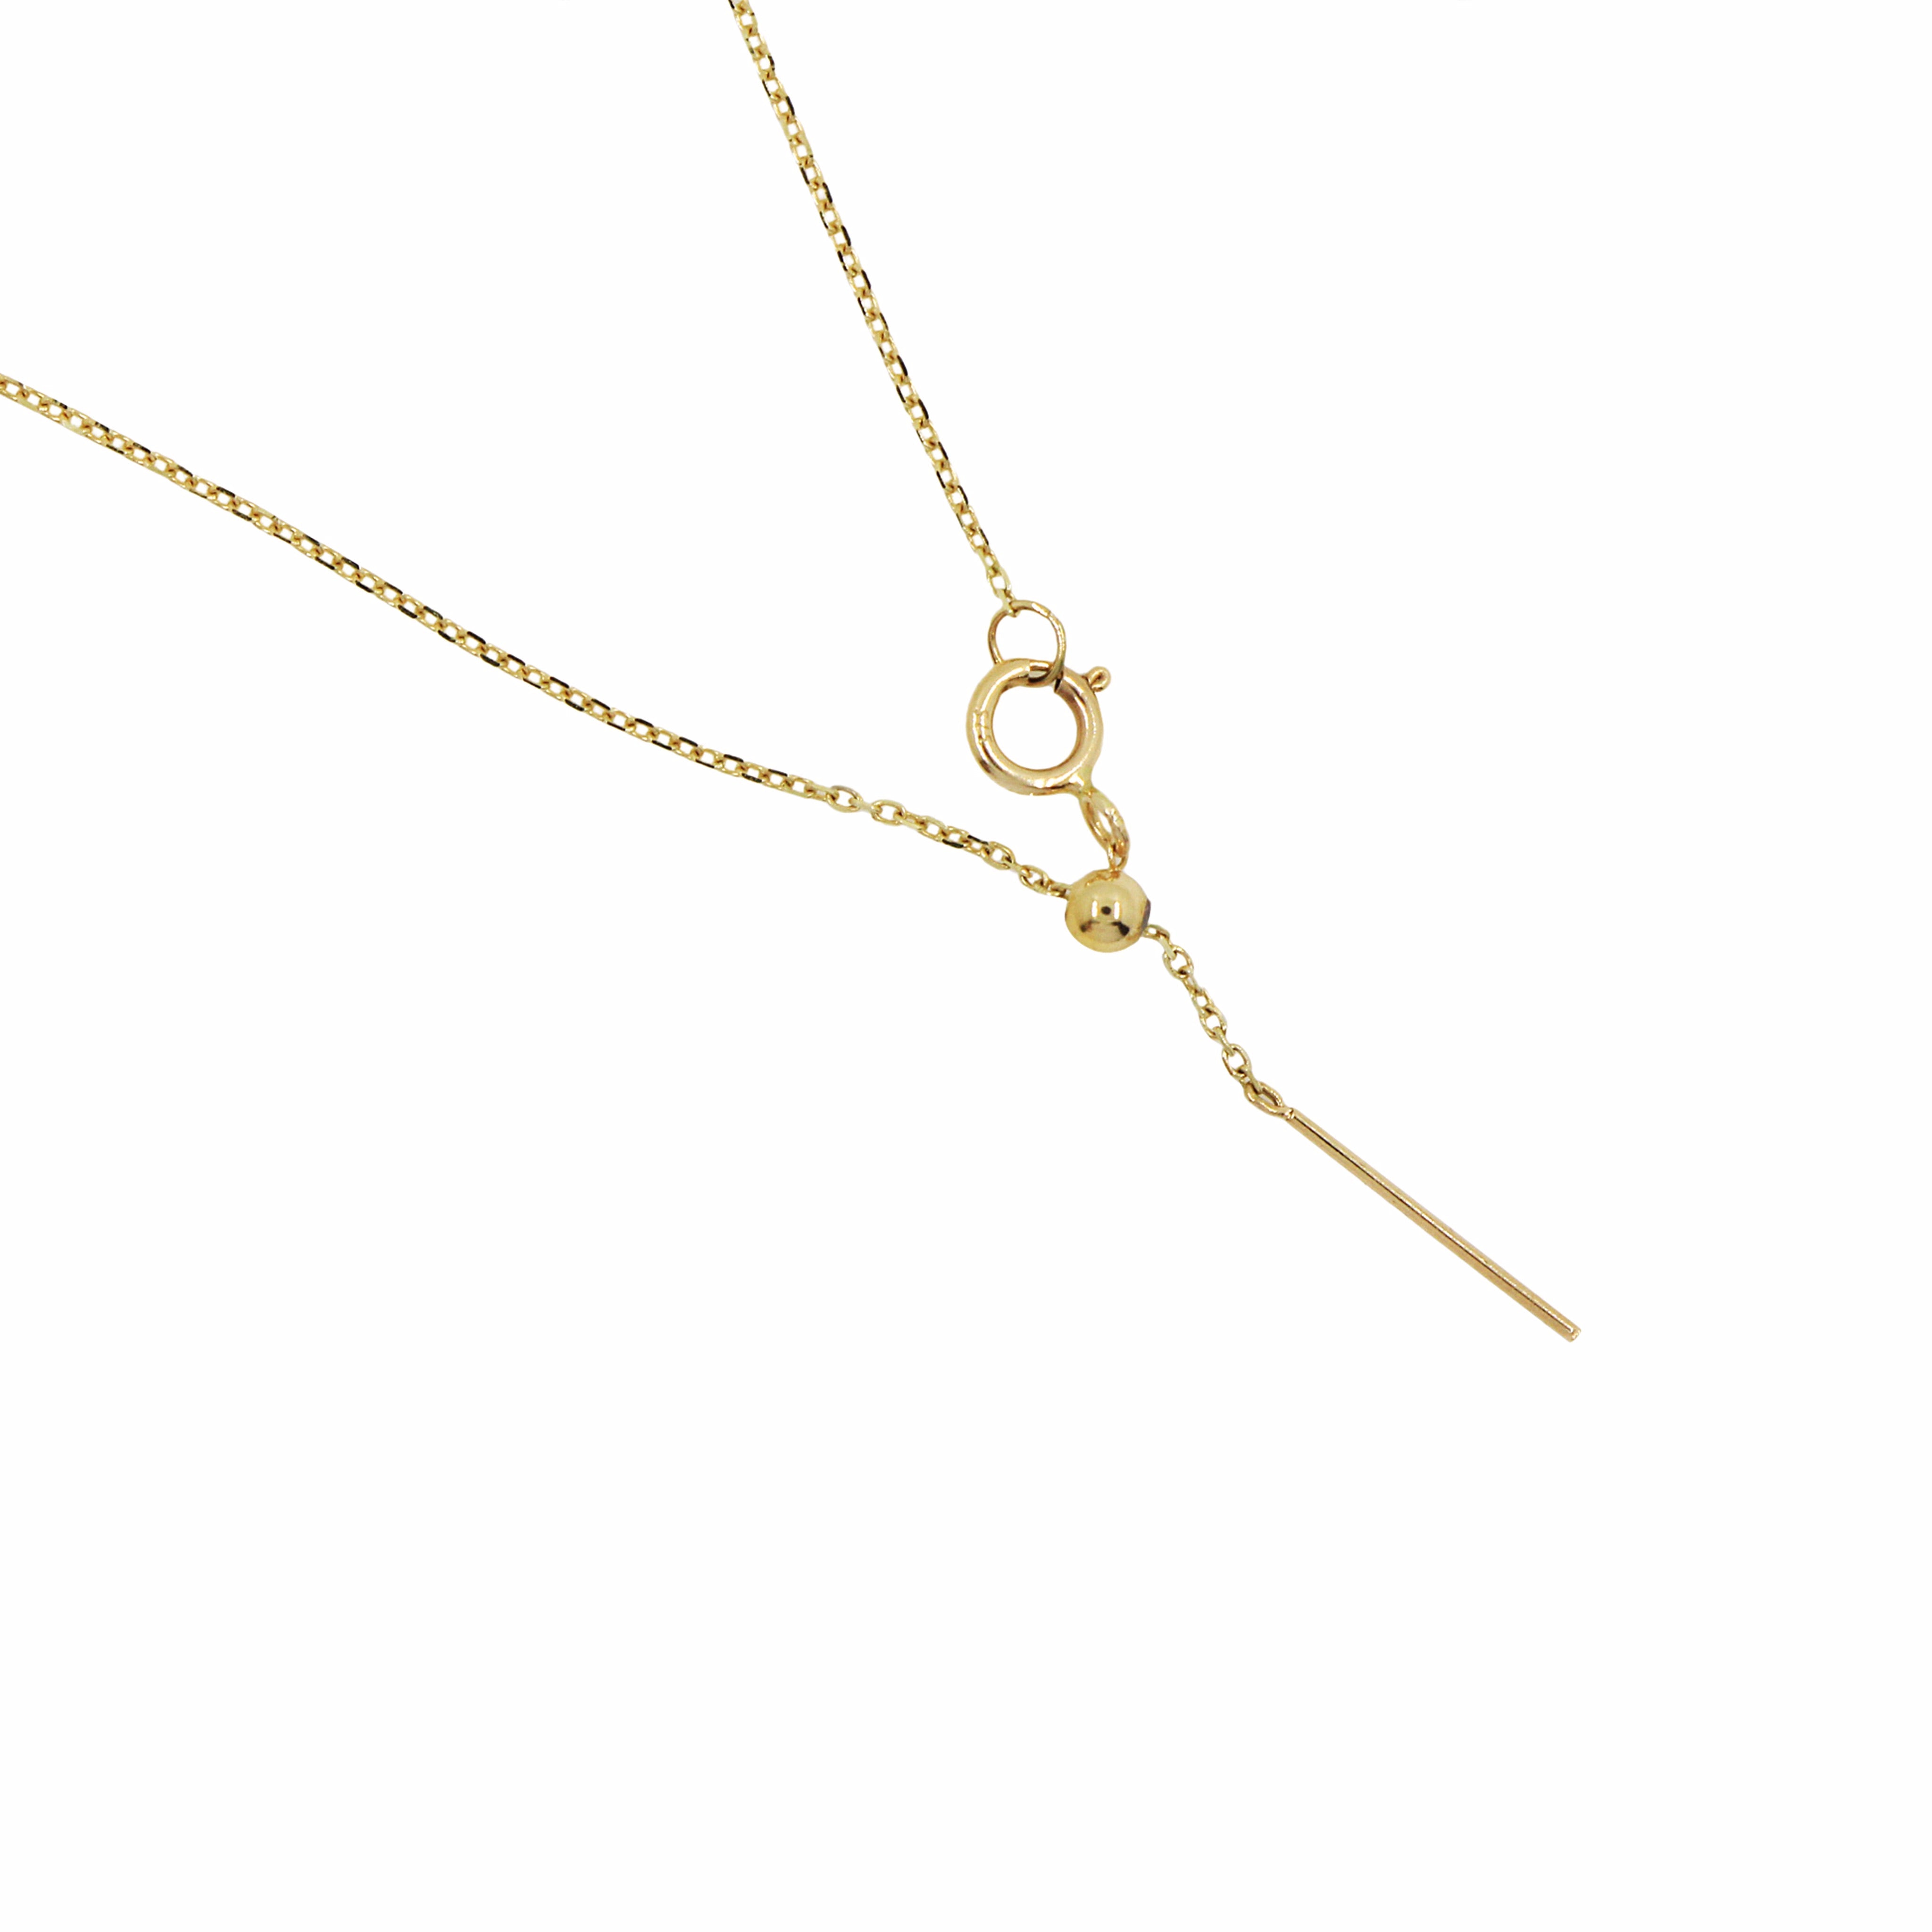 Discover Exquisite Gold Sagittarius Necklace